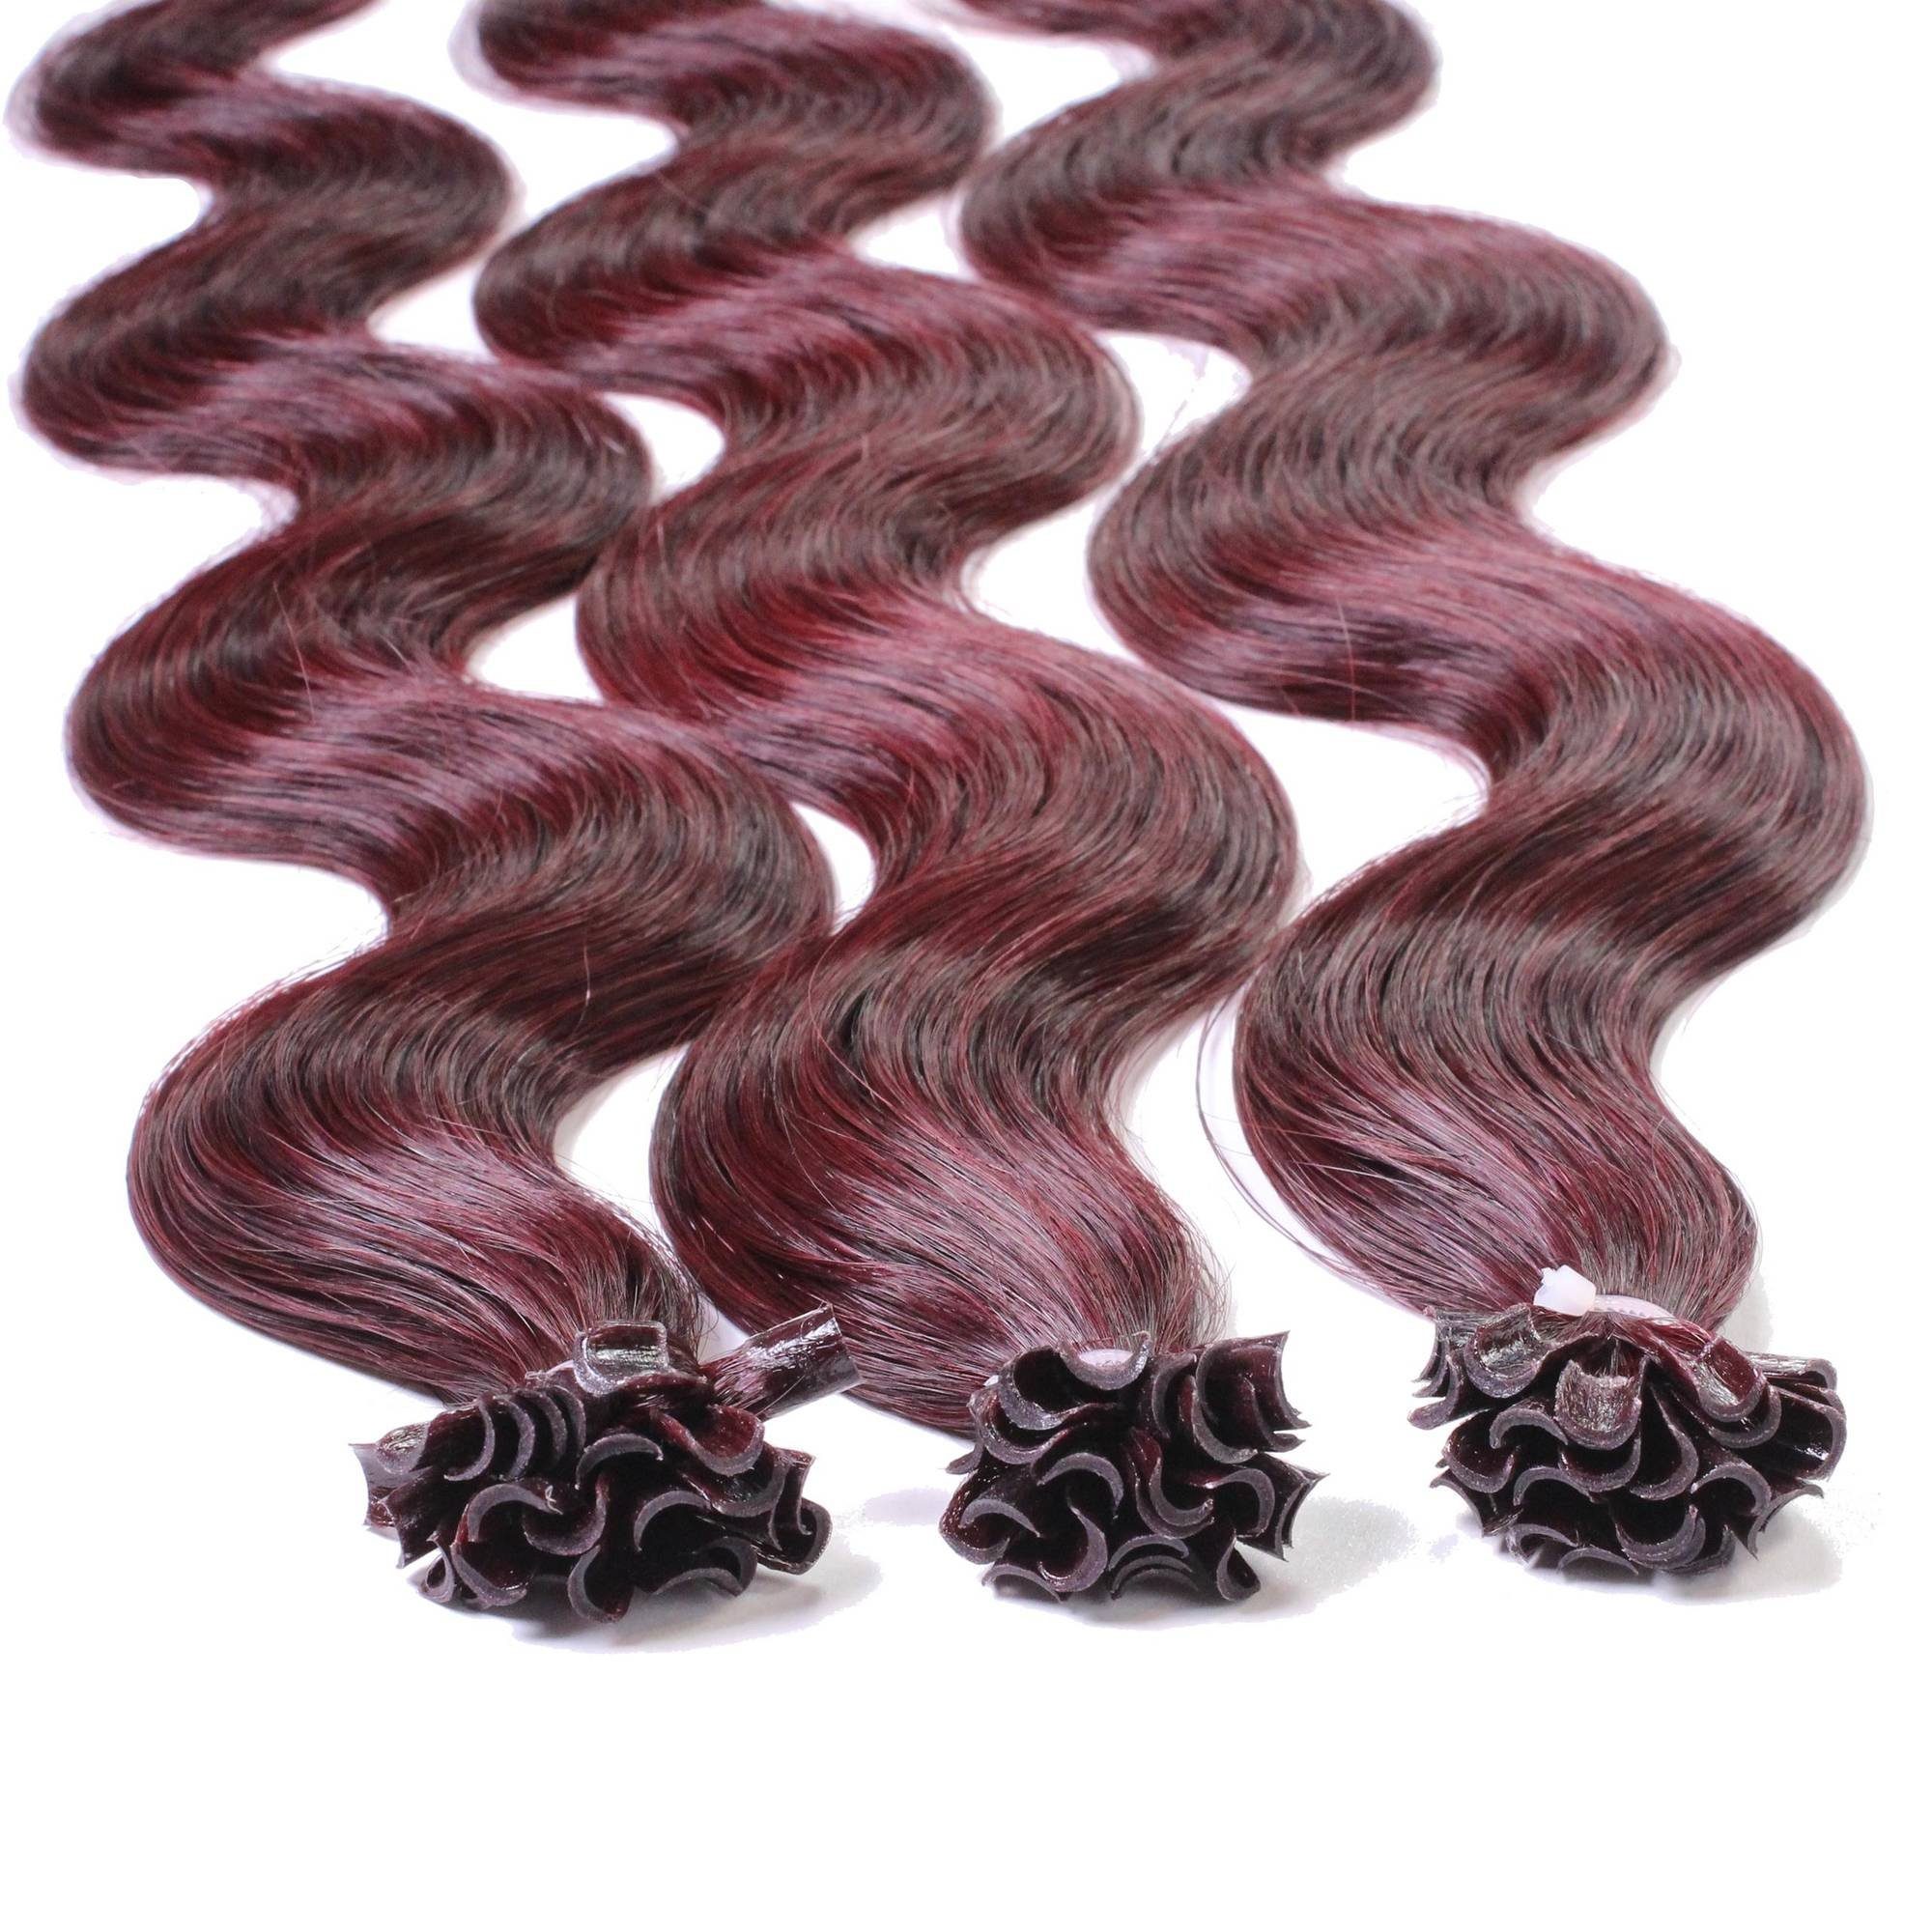 Extensions Violett 0.5g 40cm Hellbraun hair2heart #55/66 Echthaar-Extension gewellt Bonding